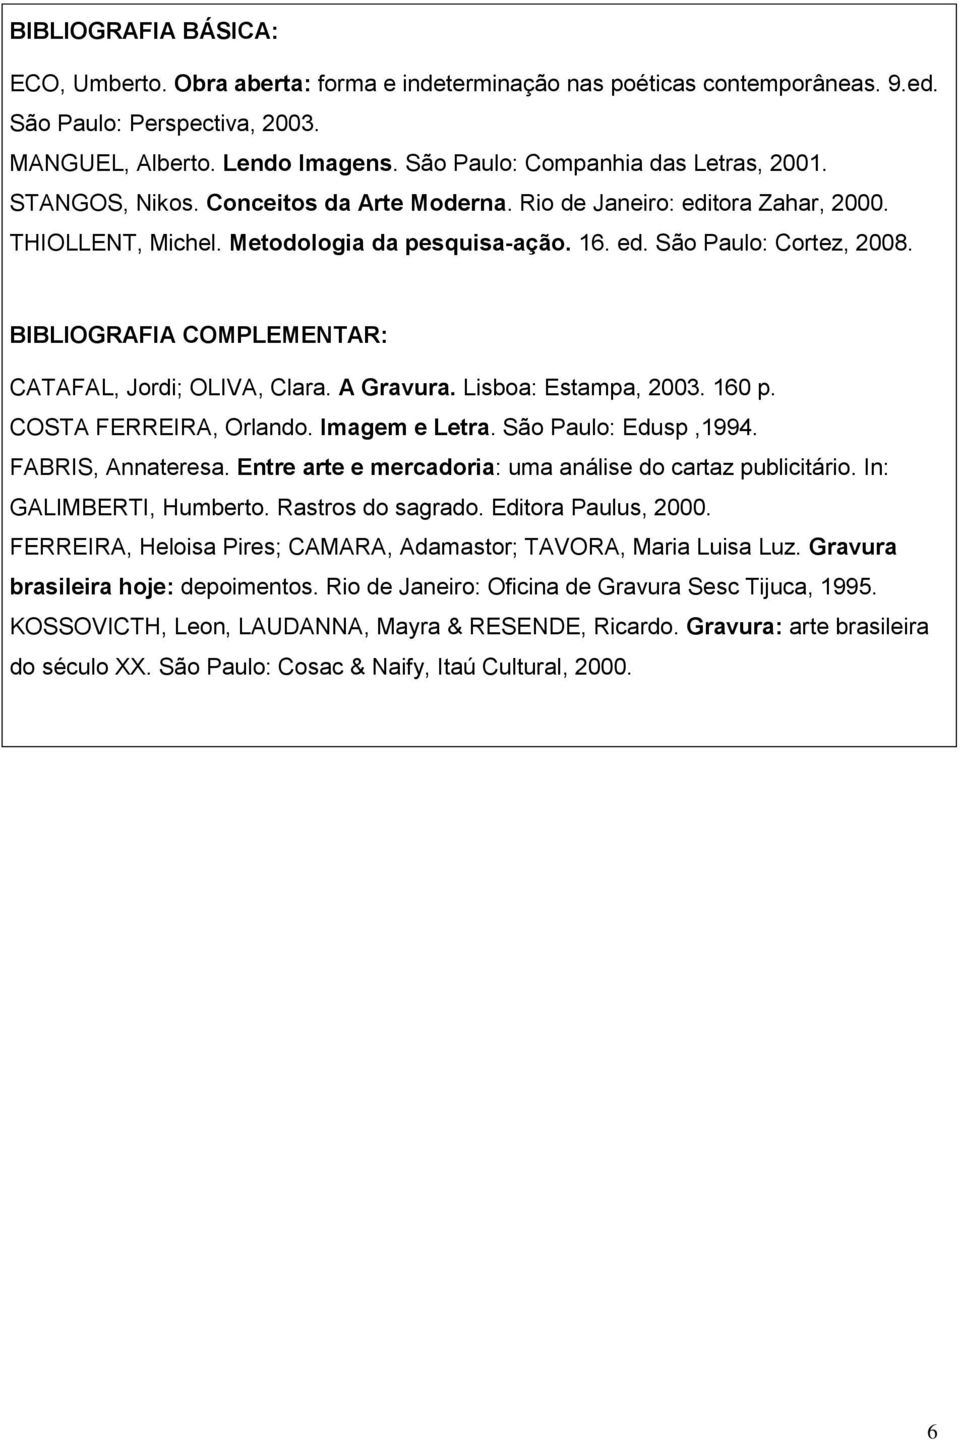 BIBLIOGRAFIA COMPLEMENTAR: CATAFAL, Jordi; OLIVA, Clara. A Gravura. Lisboa: Estampa, 2003. 160 p. COSTA FERREIRA, Orlando. Imagem e Letra. São Paulo: Edusp,1994. FABRIS, Annateresa.